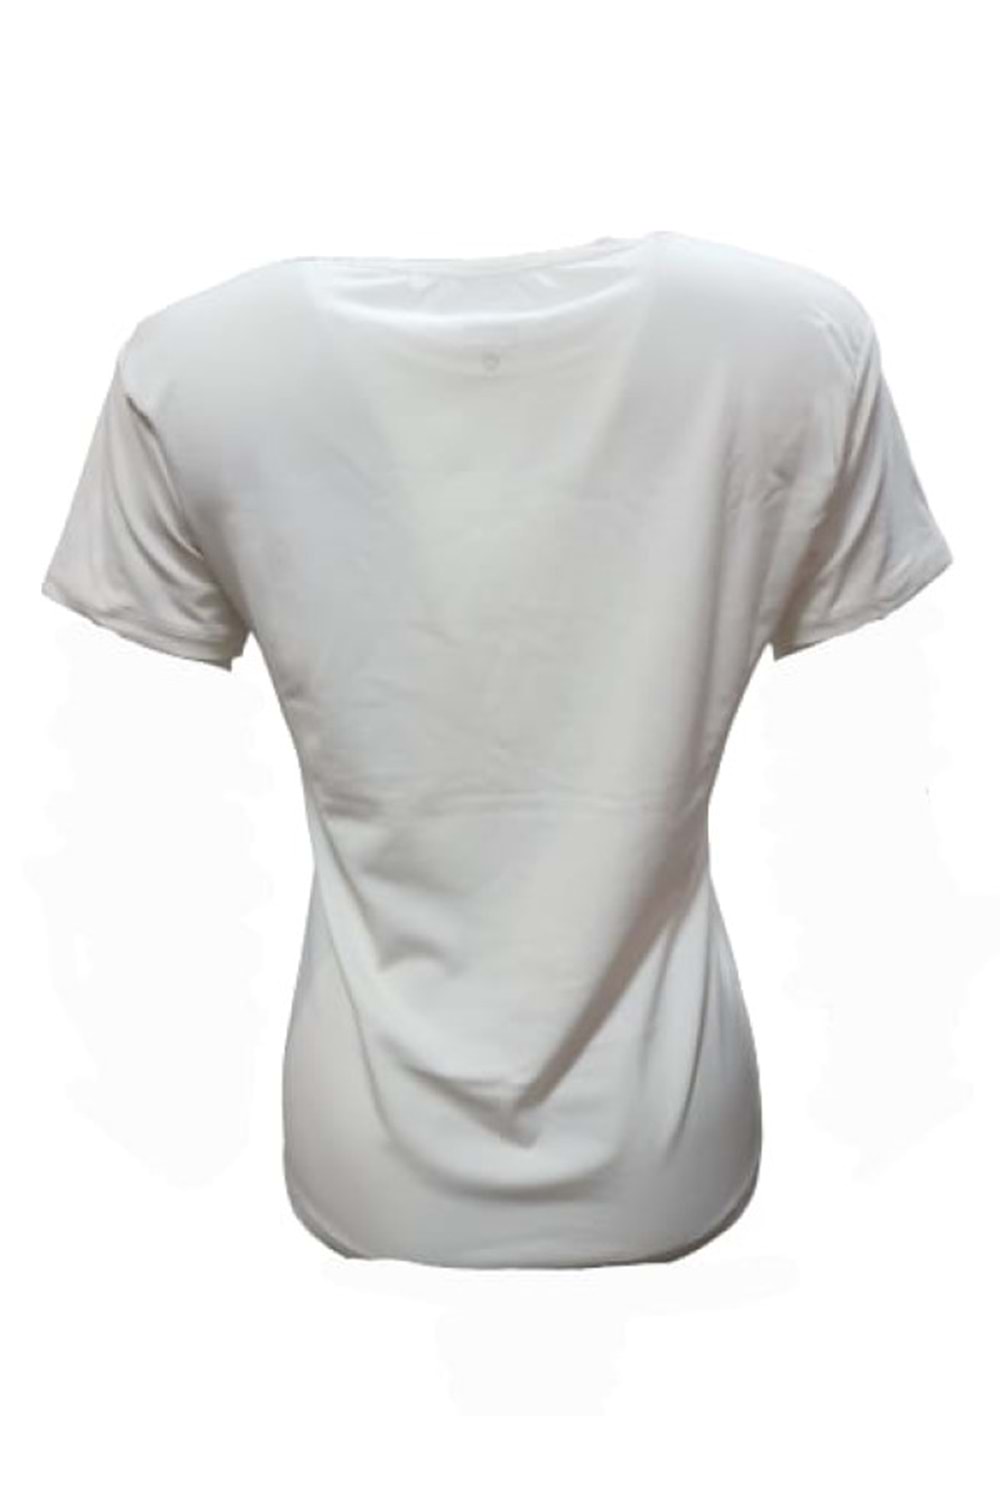 Nike Kadın Kısa Kol Sıfır Yaka T-shirt 01270 - Krem - L